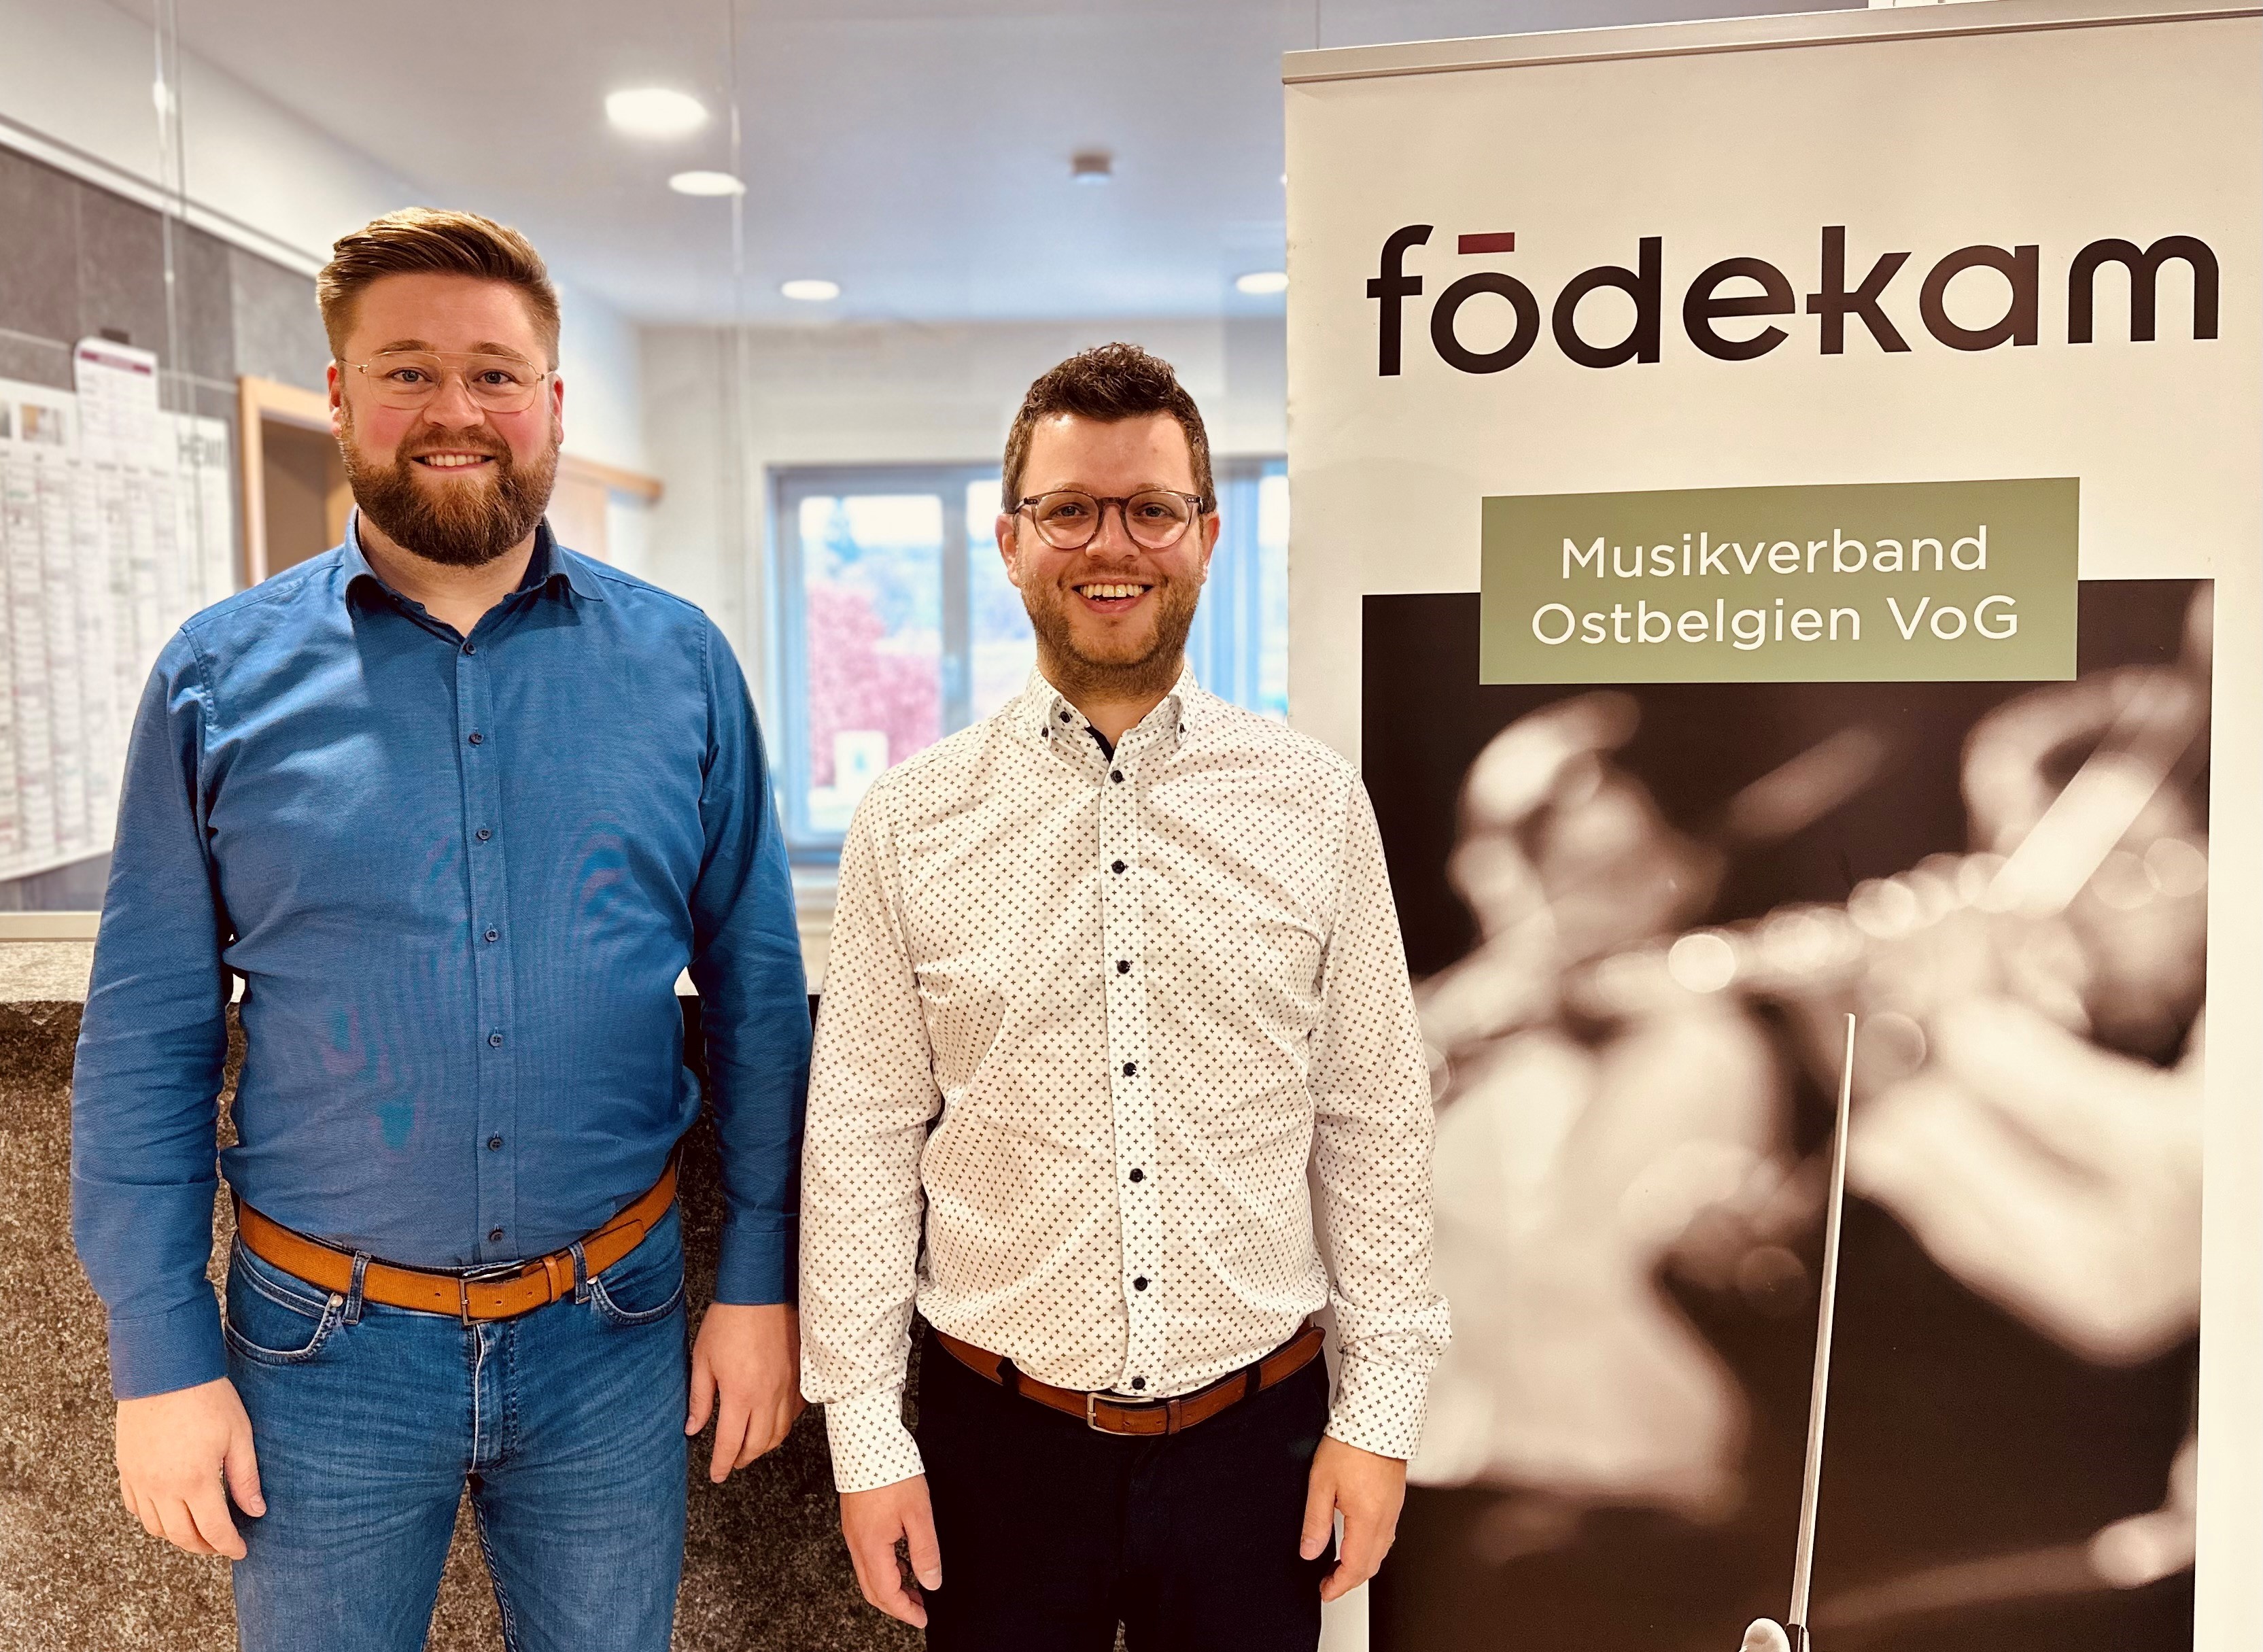 Neue Geschäftsführung beim Musikverband Födekam